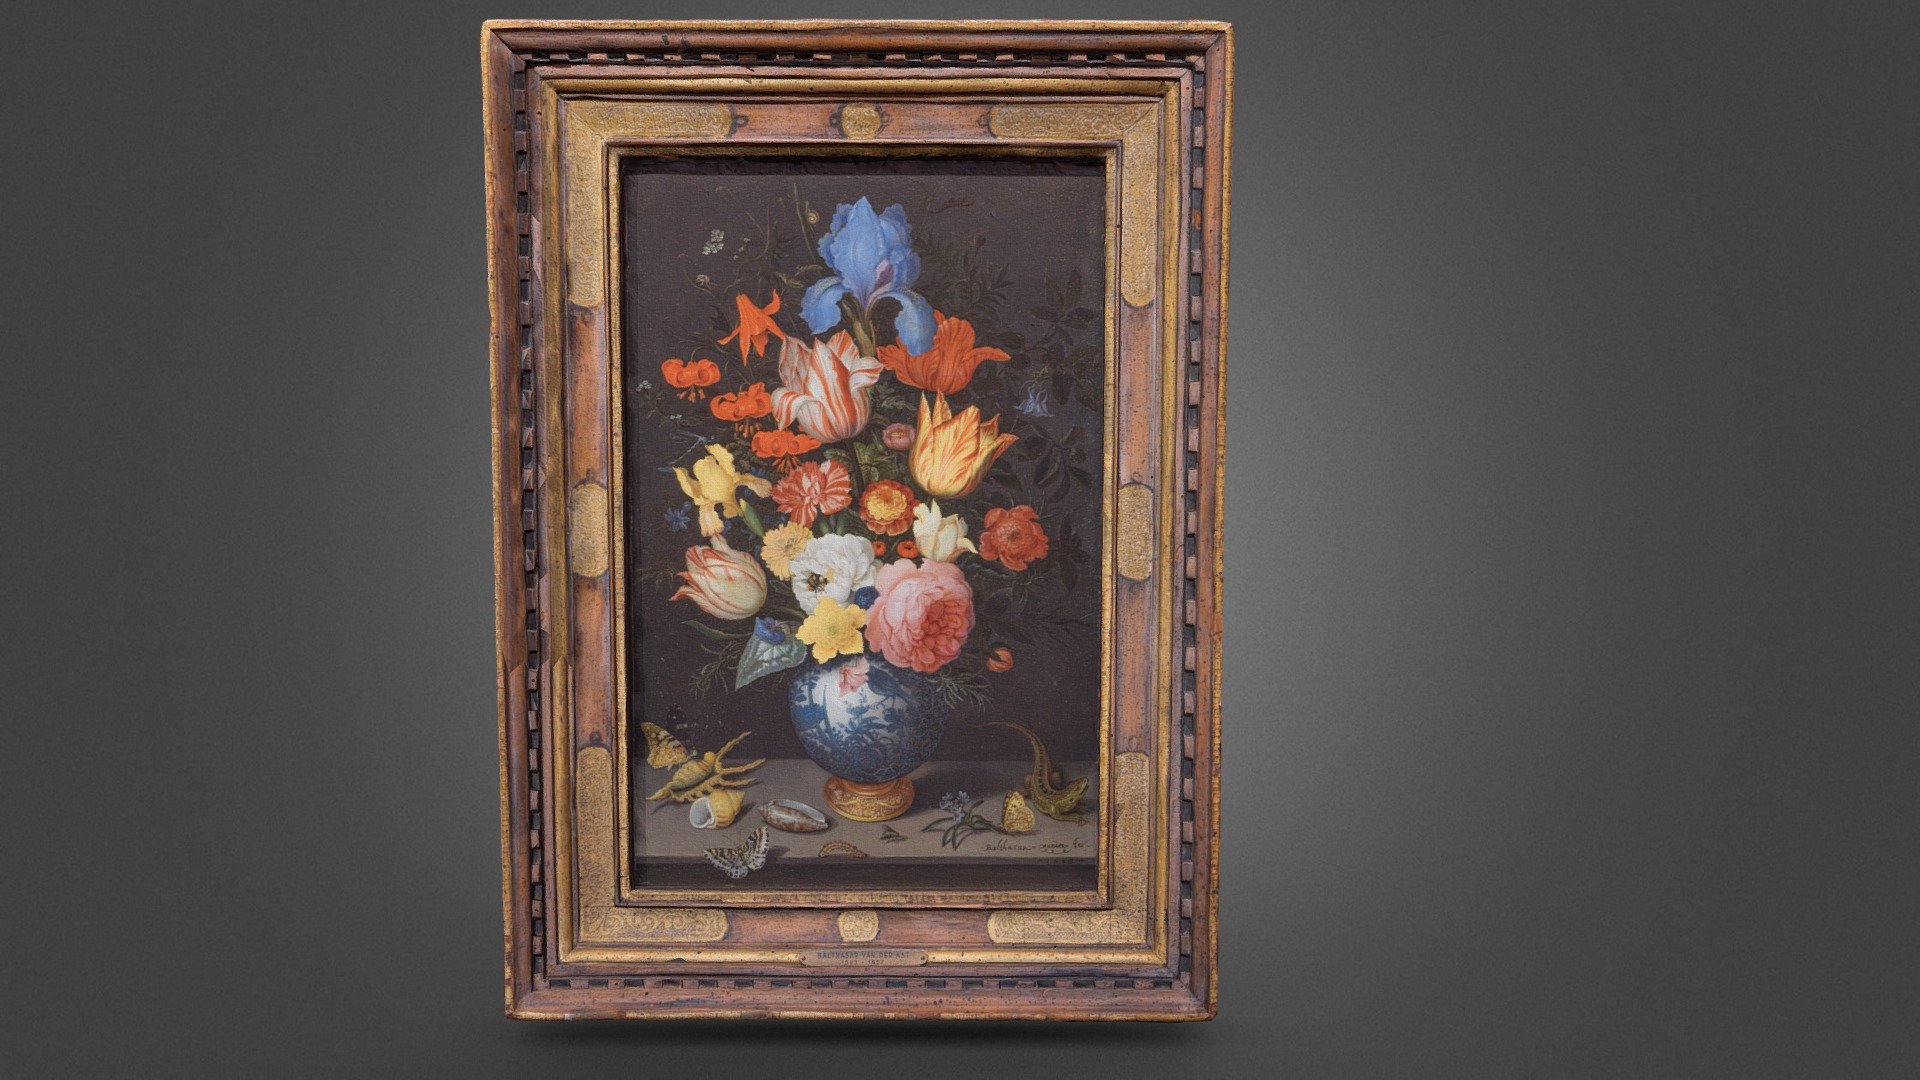 Balthasar van der Ast -Chinese Vase with Flowers